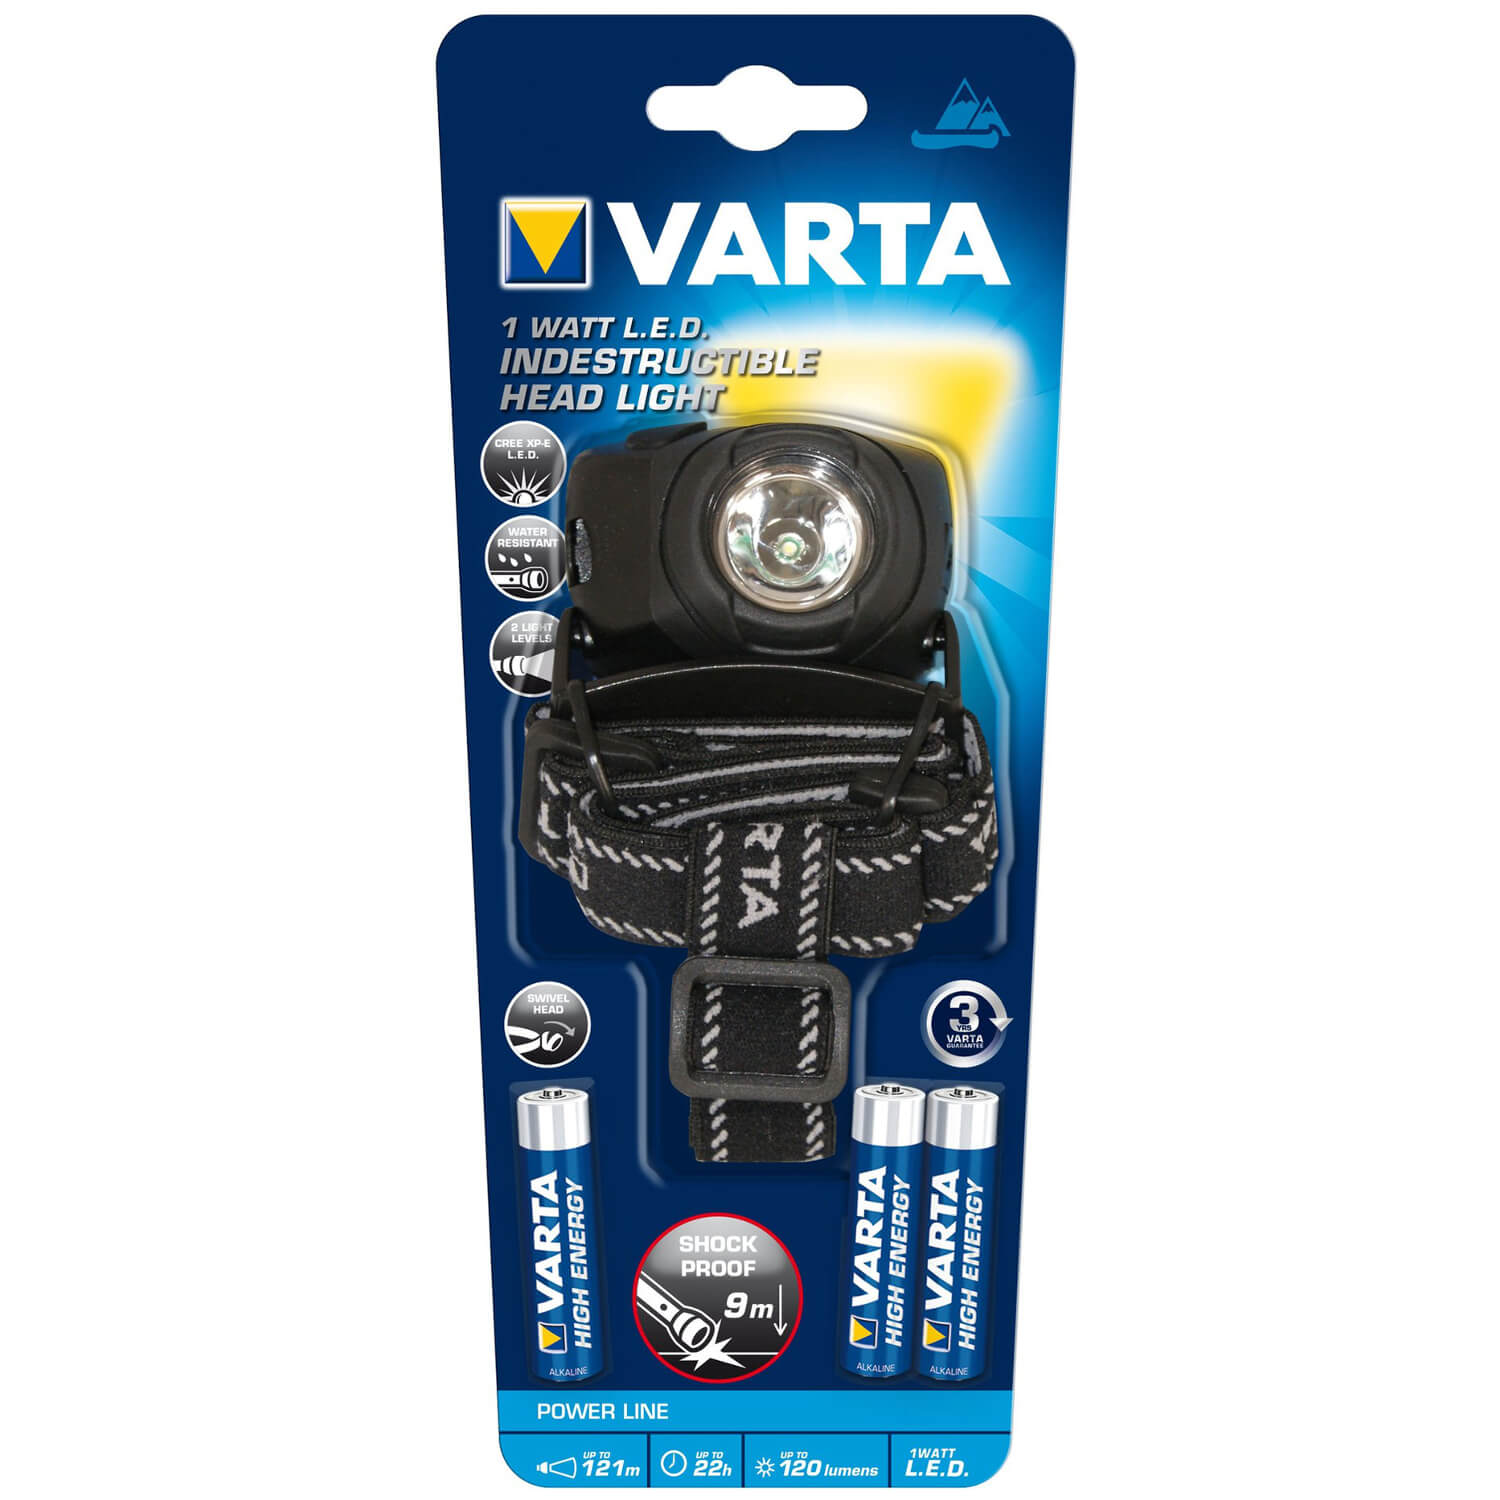  Lanterna Varta 1 W LED 17731, 3 x AAA, Frontala 